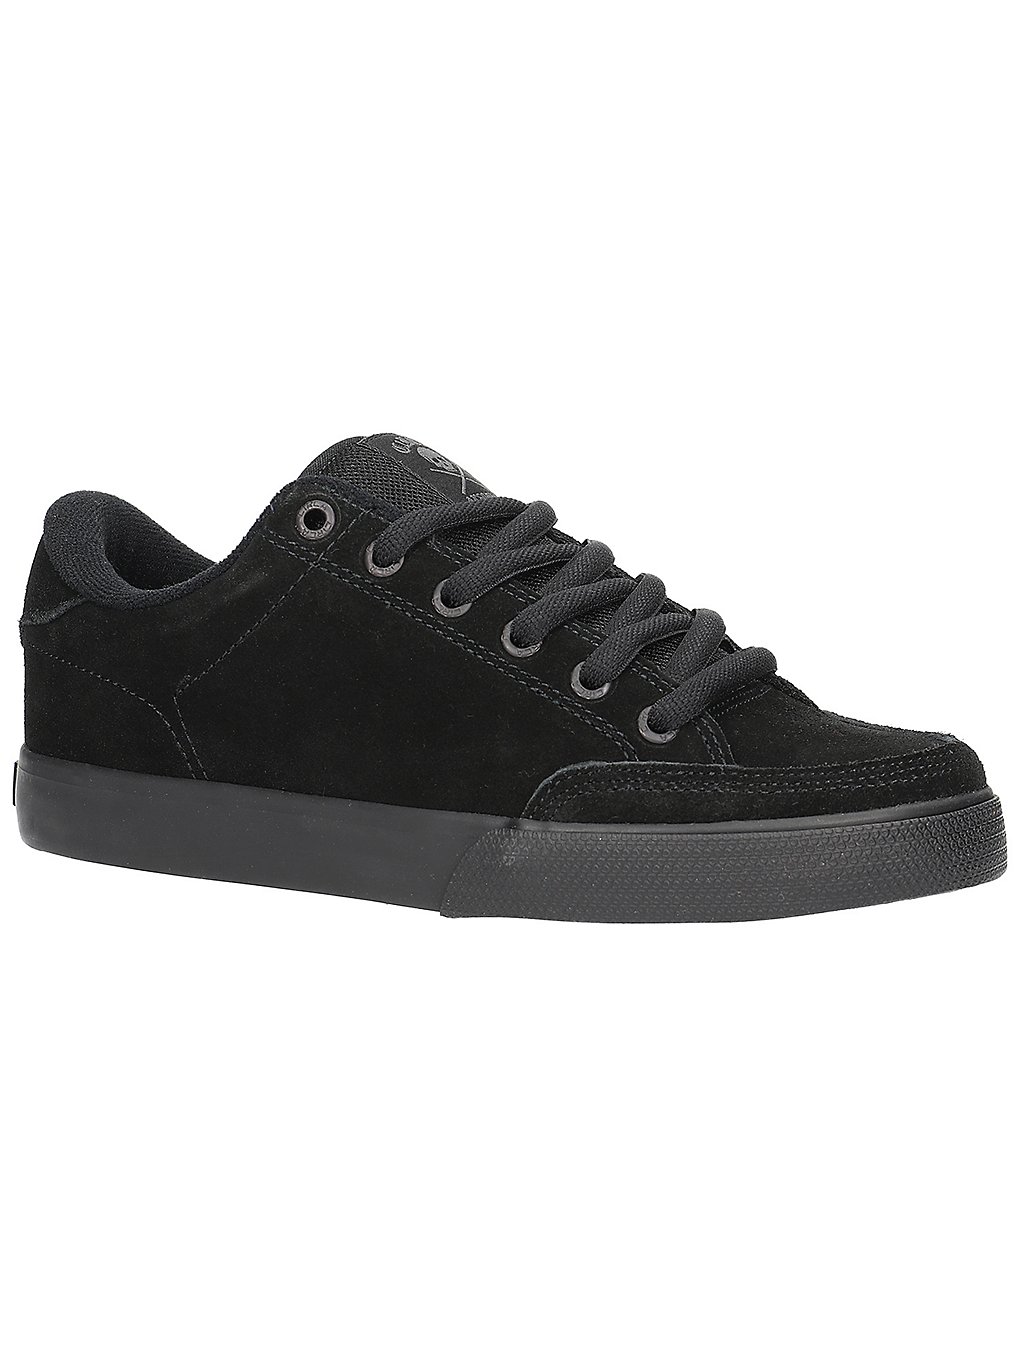 Circa AL 50 Pro Skate Shoes noir